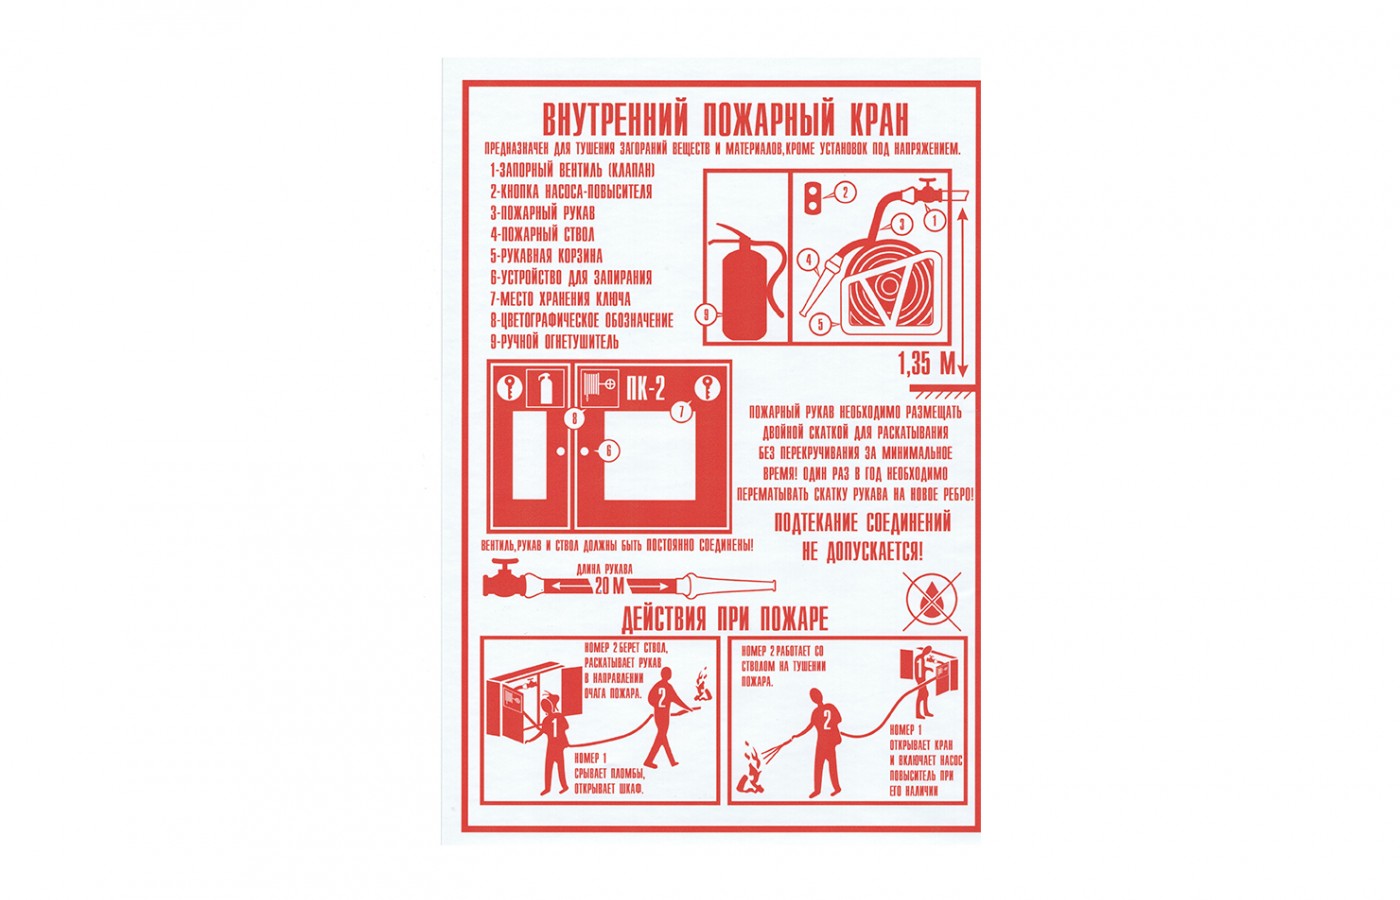 Плакат "Правила пользования пожарным краном"